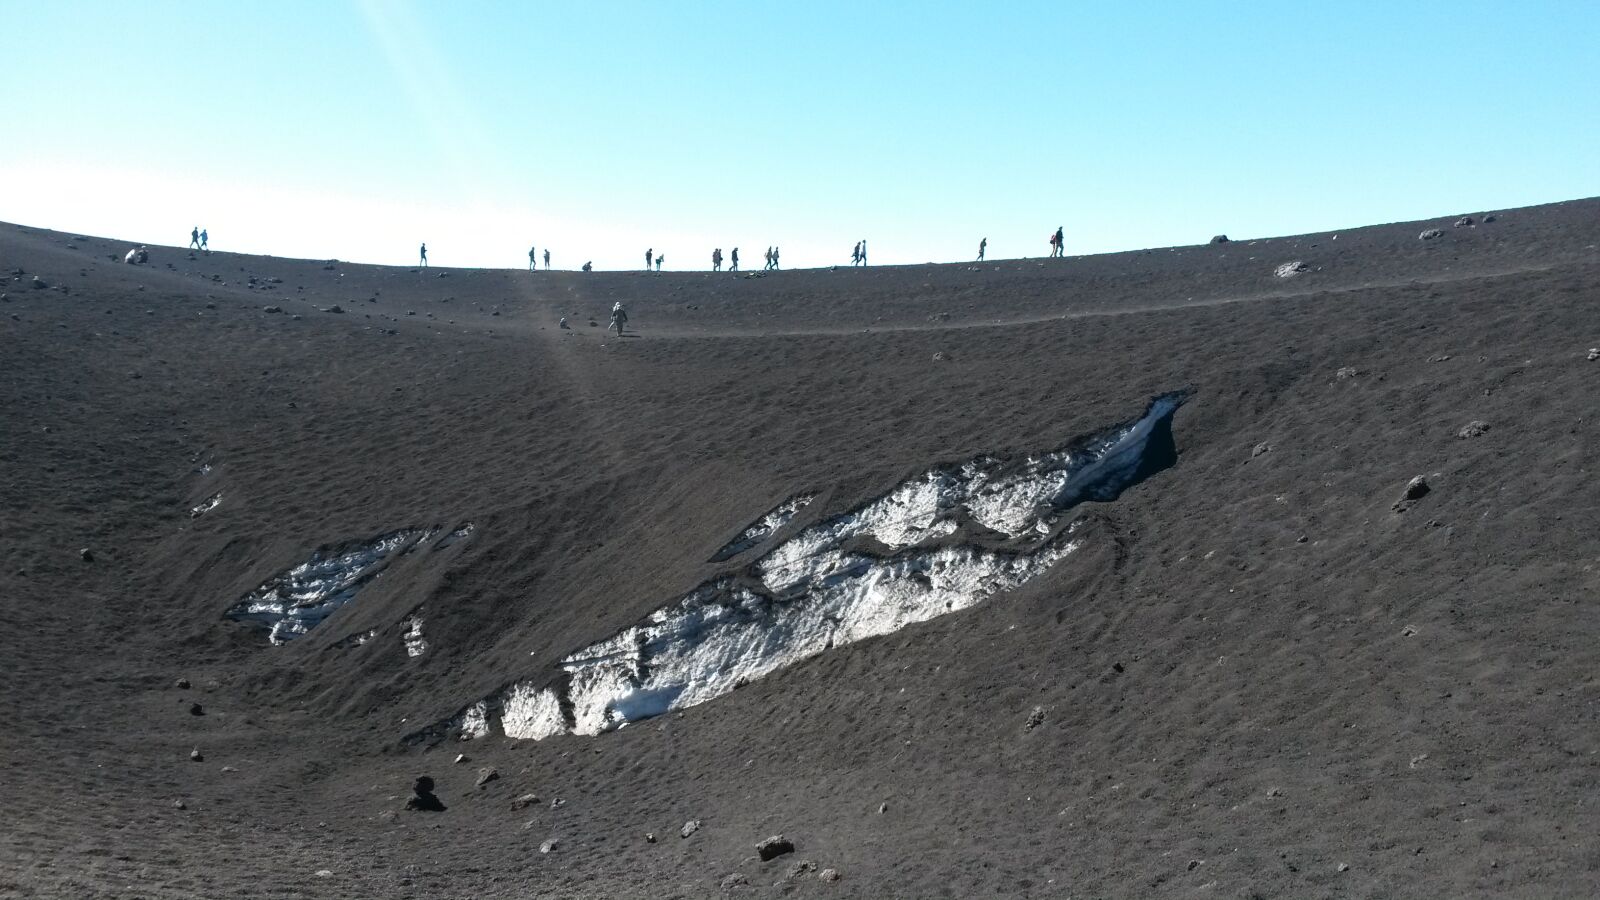 Samsung Galaxy S4 Mini sample photo. Volcano, scenic, landscape photography